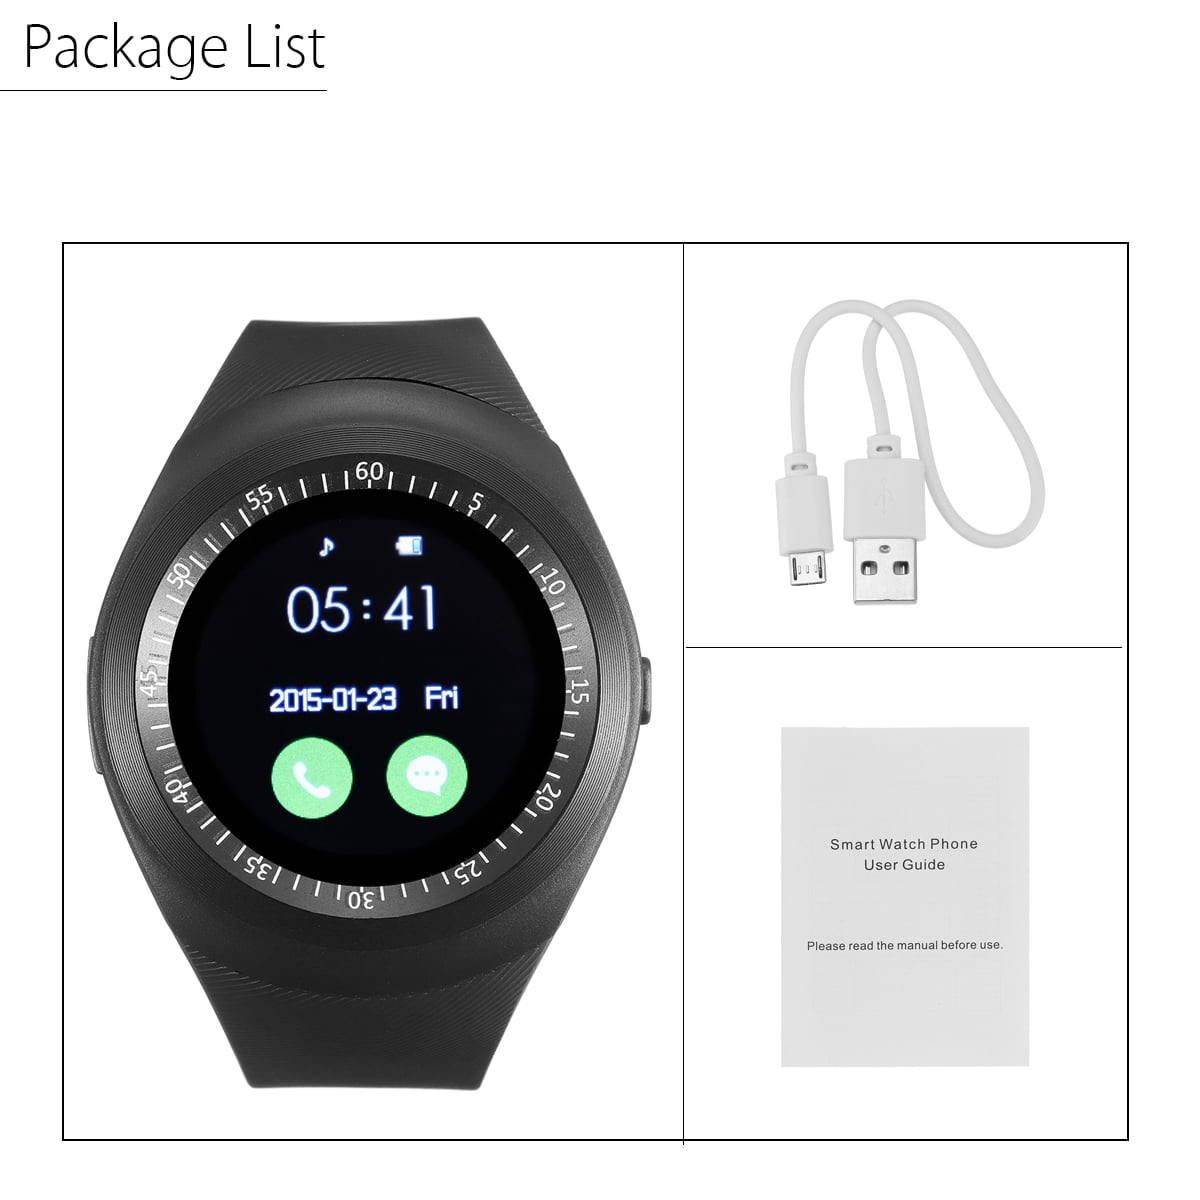 Как подключить настроить смарт часы. Часы Smart watch Phone user Guide. Смарт часы Band user Guide. Smart watch user manualинструксия. Часы смарт вотч усерс мануал.